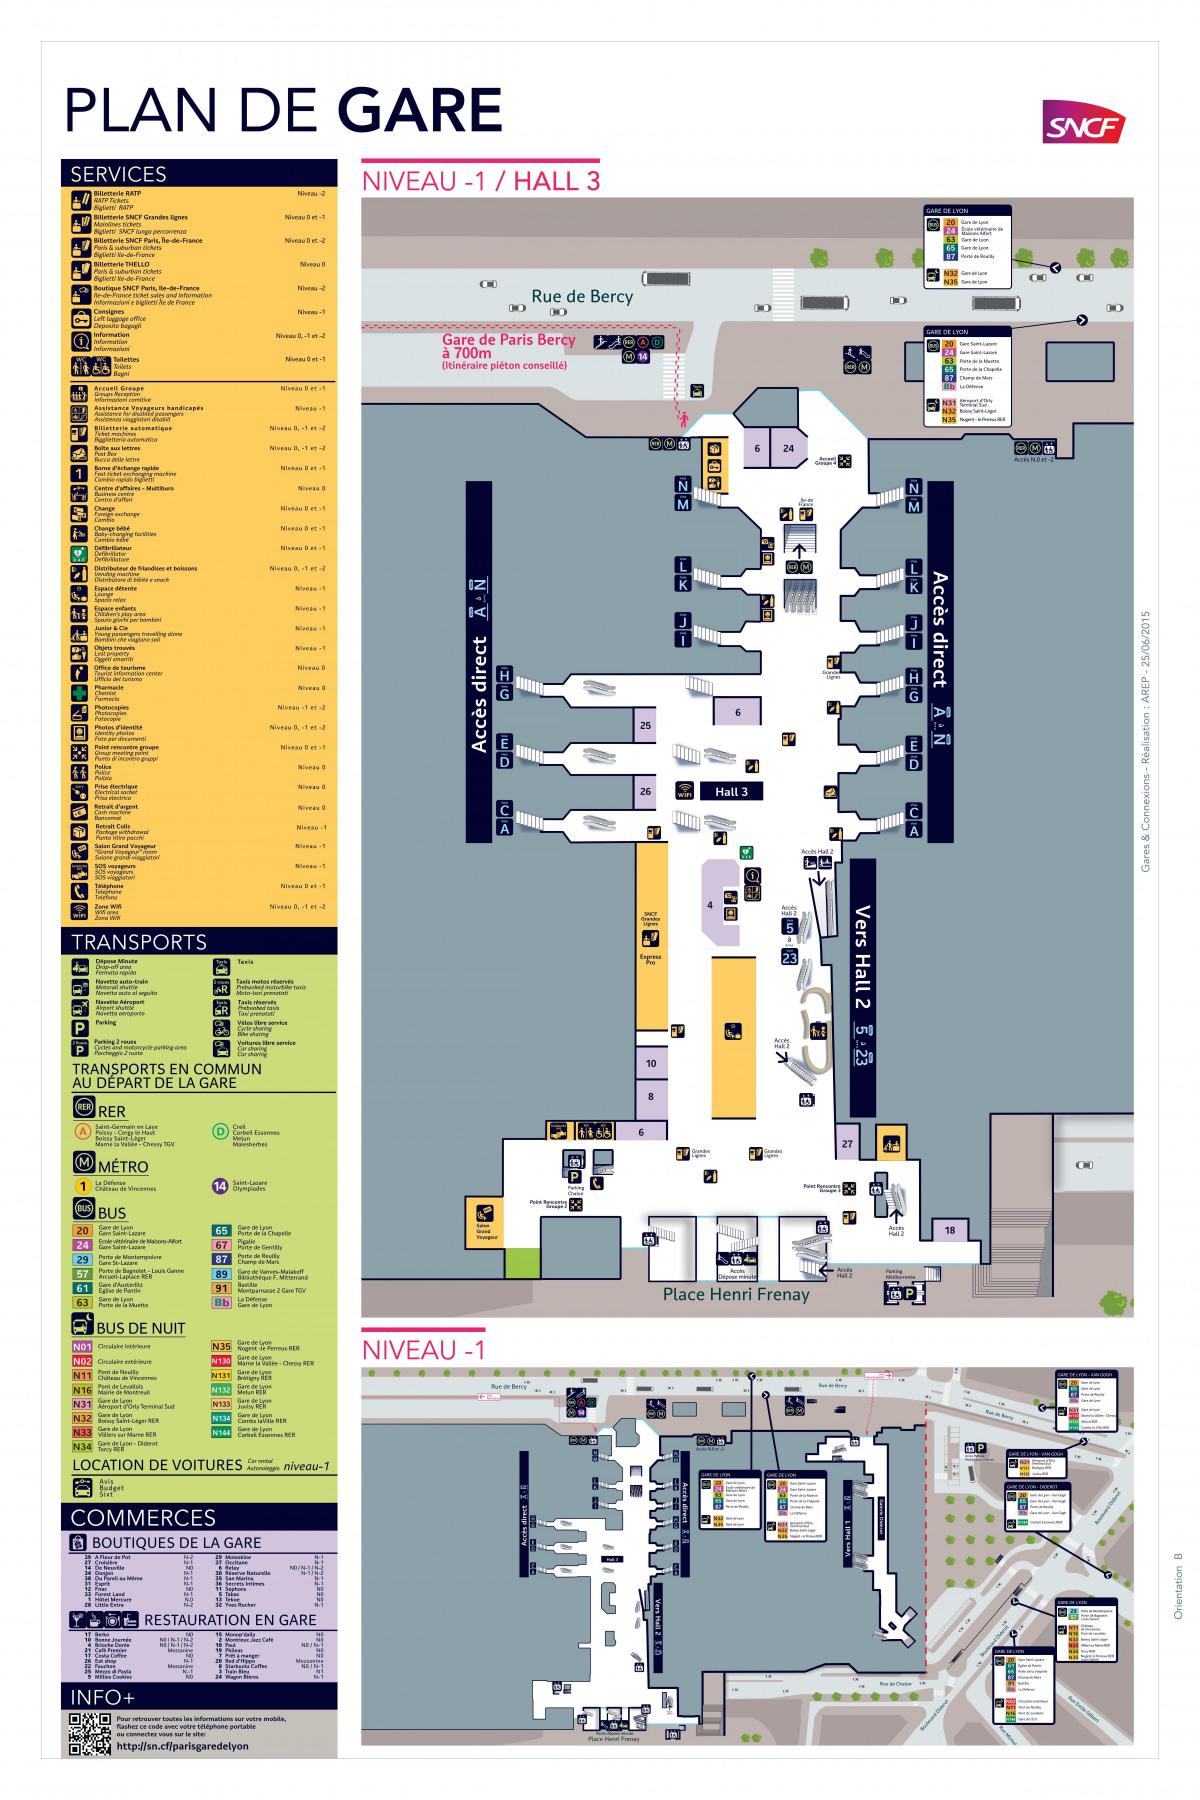 Map of Paris-Gare de Lyon Hall 3